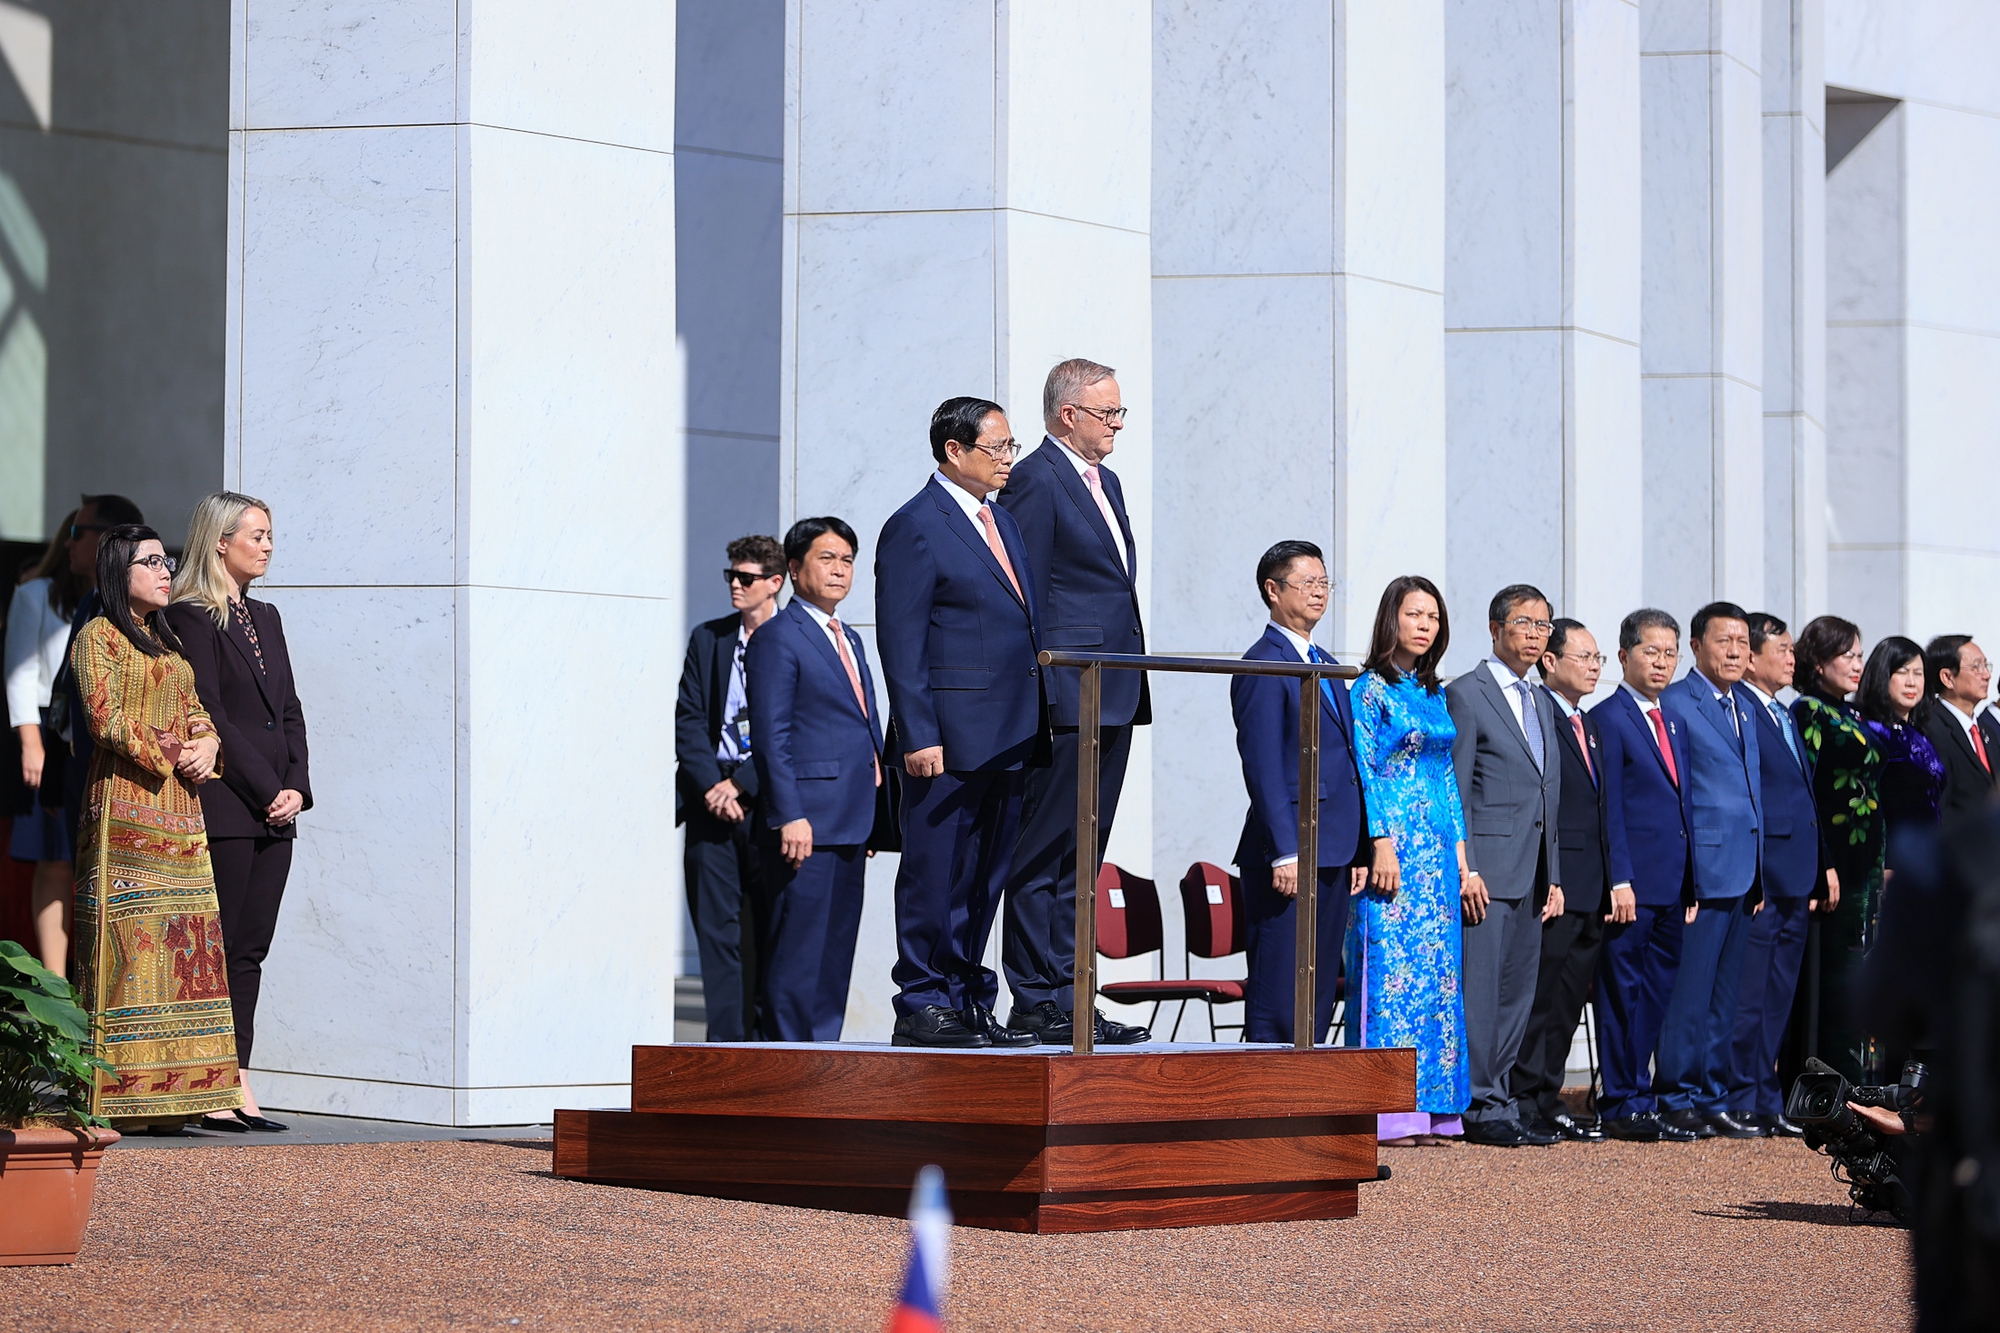 Lễ đón Thủ tướng Phạm Minh Chính thăm chính thức Australia theo nghi thức trọng thể nhất, được tổ chức tại Tòa nhà Quốc hội nằm trên đồi Capital ở Thủ đô Canberra của Australia - Ảnh: VGP/Nhật Bắc